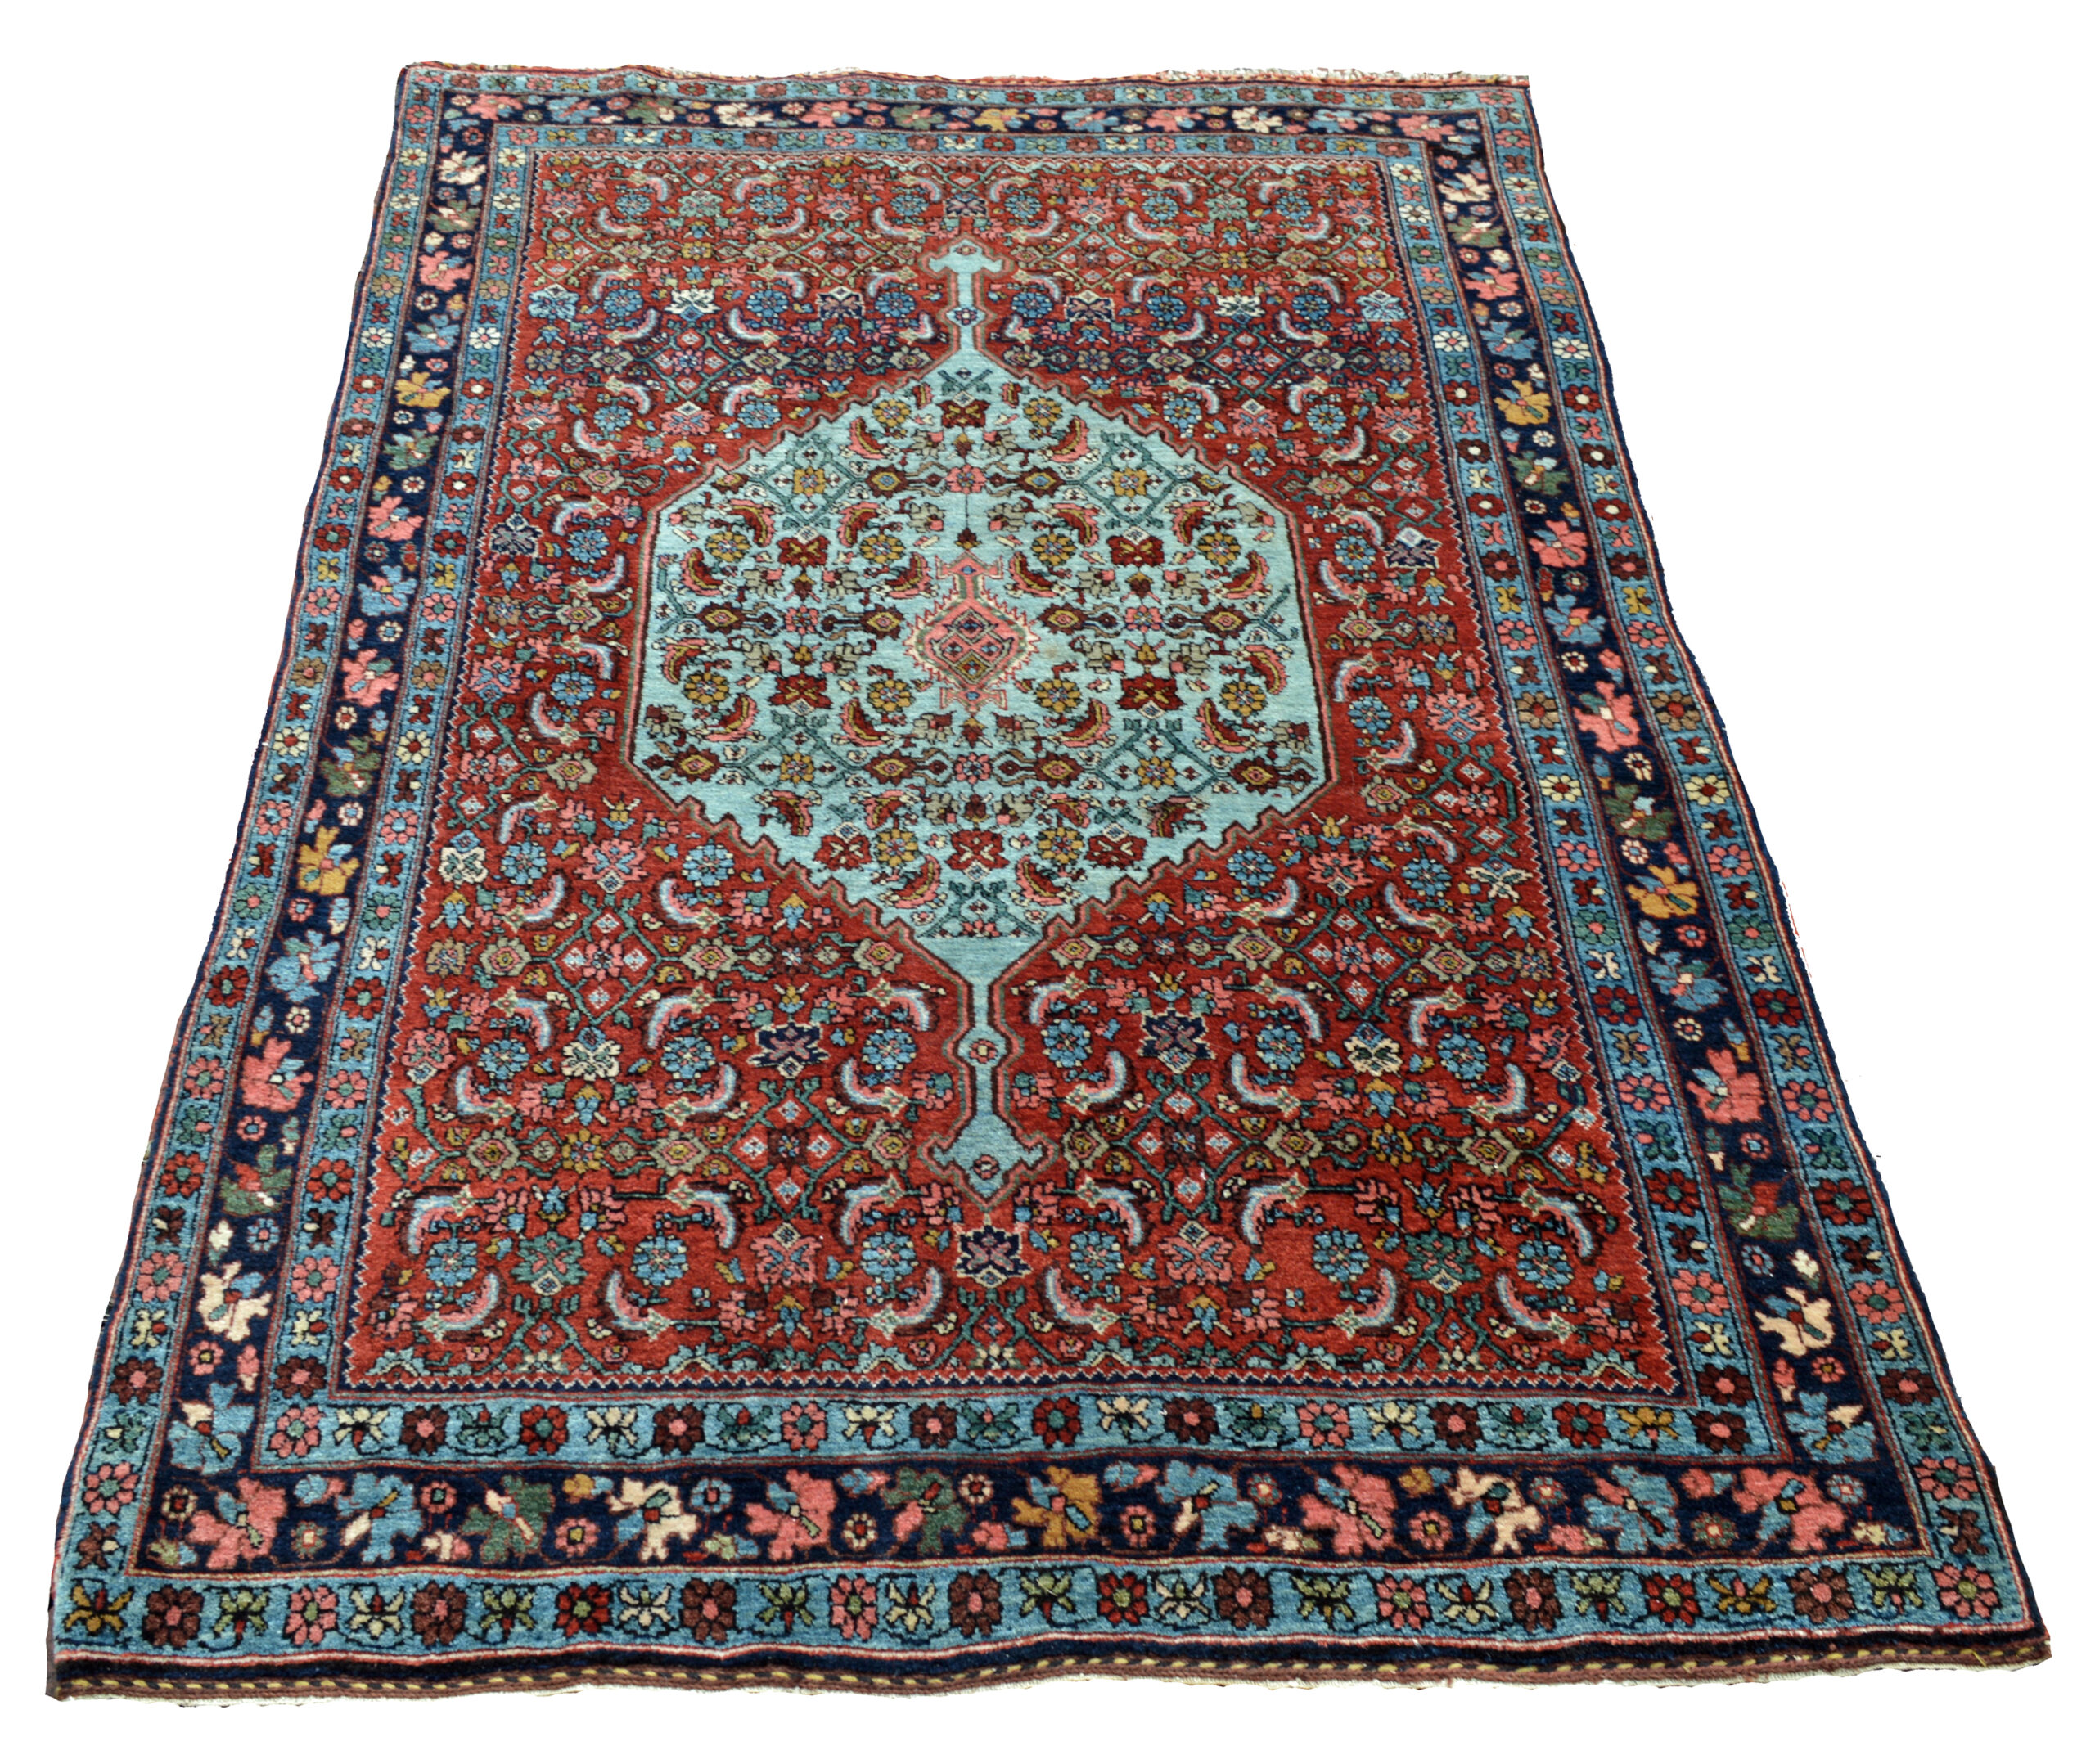 Antique Persian Bidjar rug.